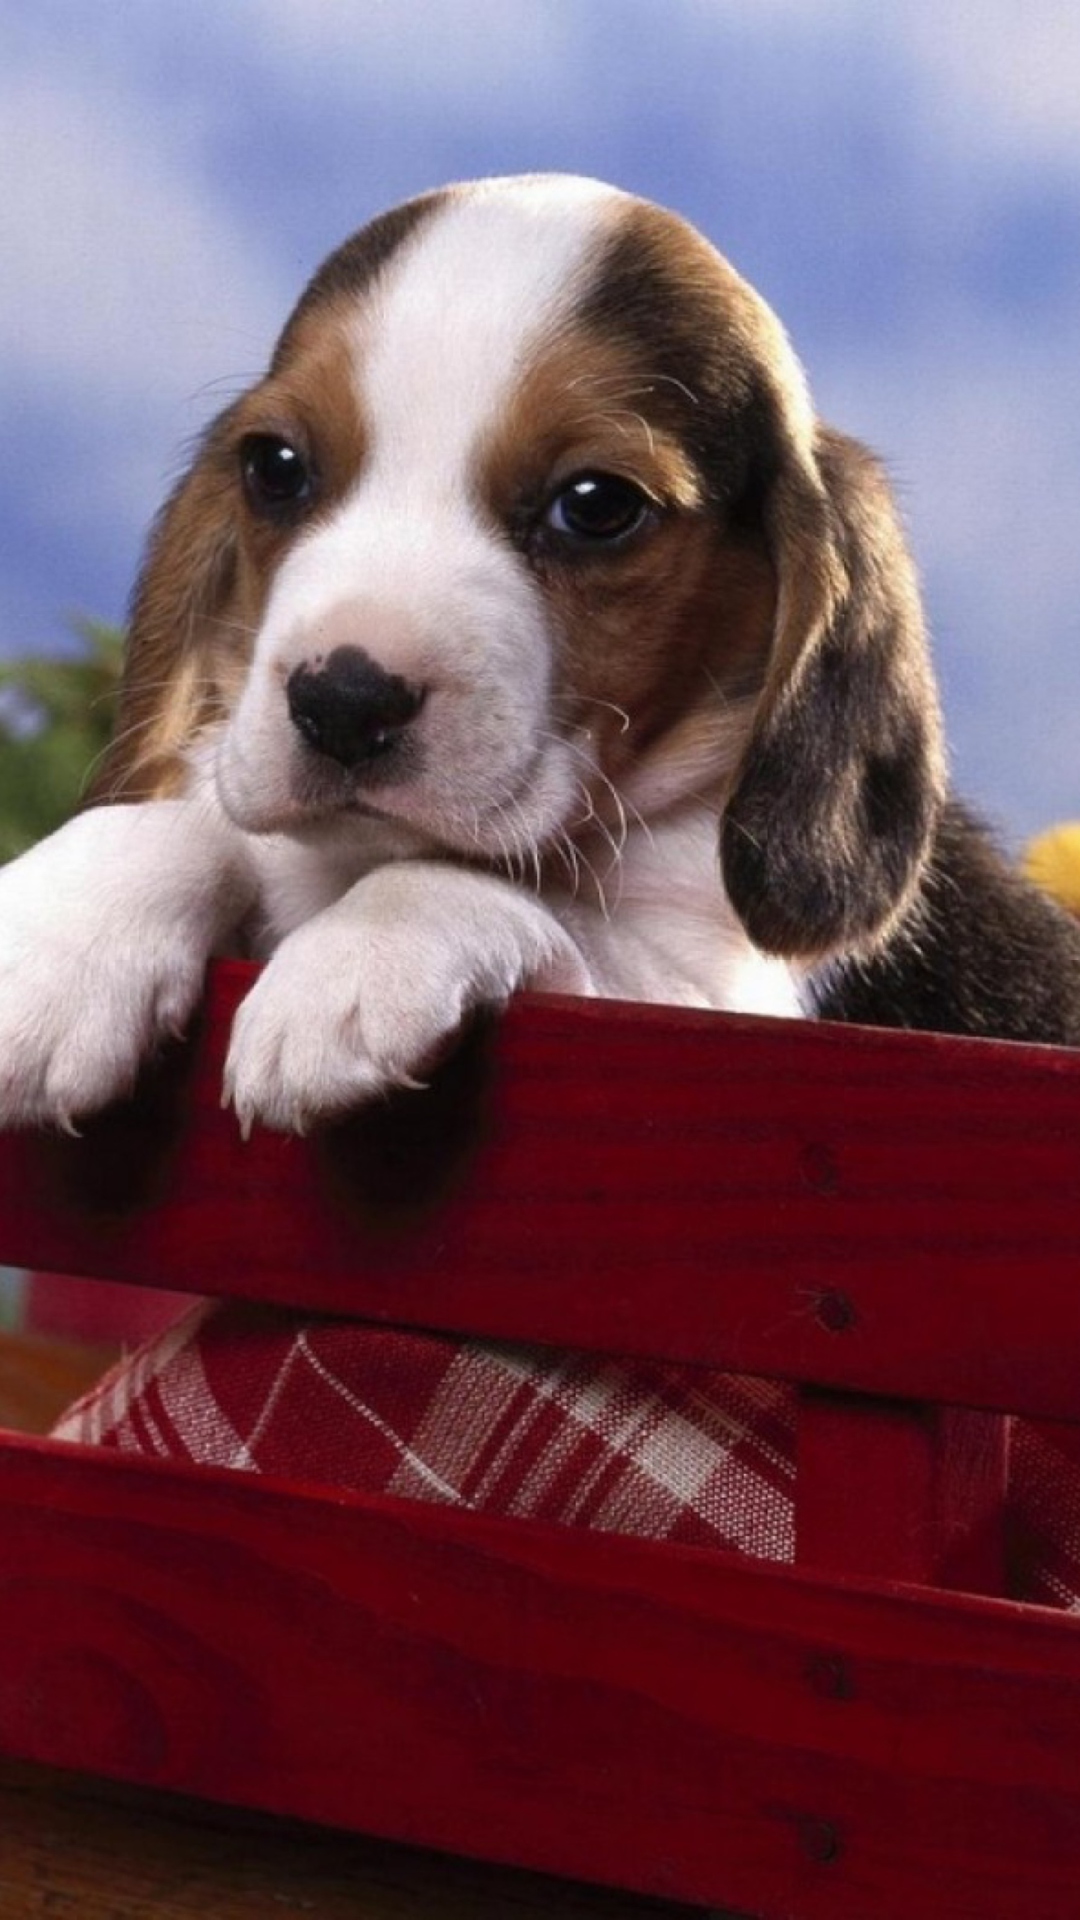 Das Puppy On Red Bench Wallpaper 1080x1920